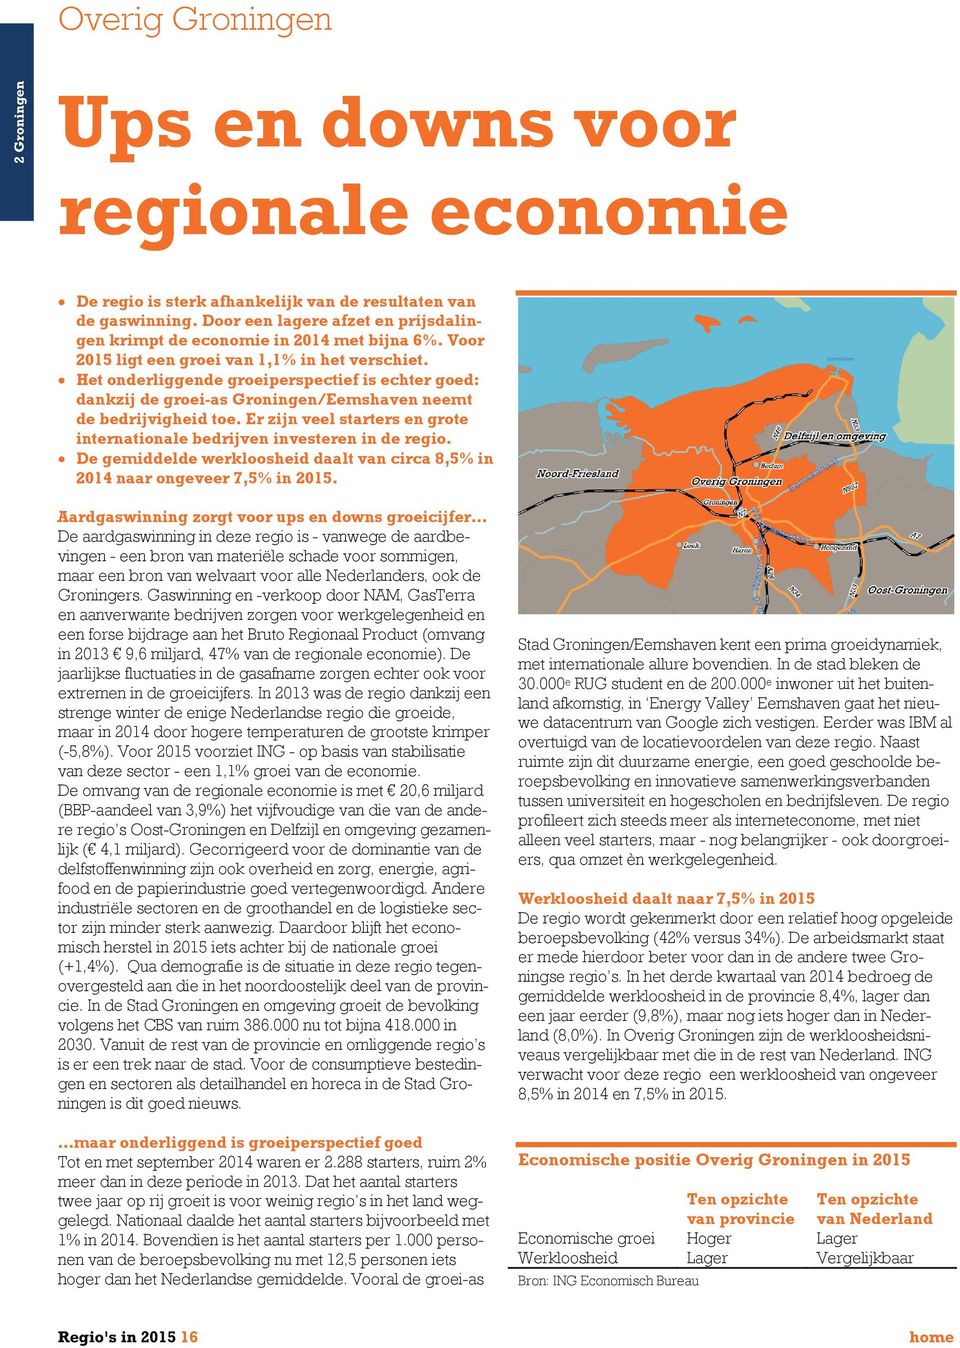 Het onderliggende groeiperspectief is echter goed: dankzij de groei-as Groningen/Eemshaven neemt de bedrijvigheid toe. Er zijn veel starters en grote internationale bedrijven investeren in de regio.